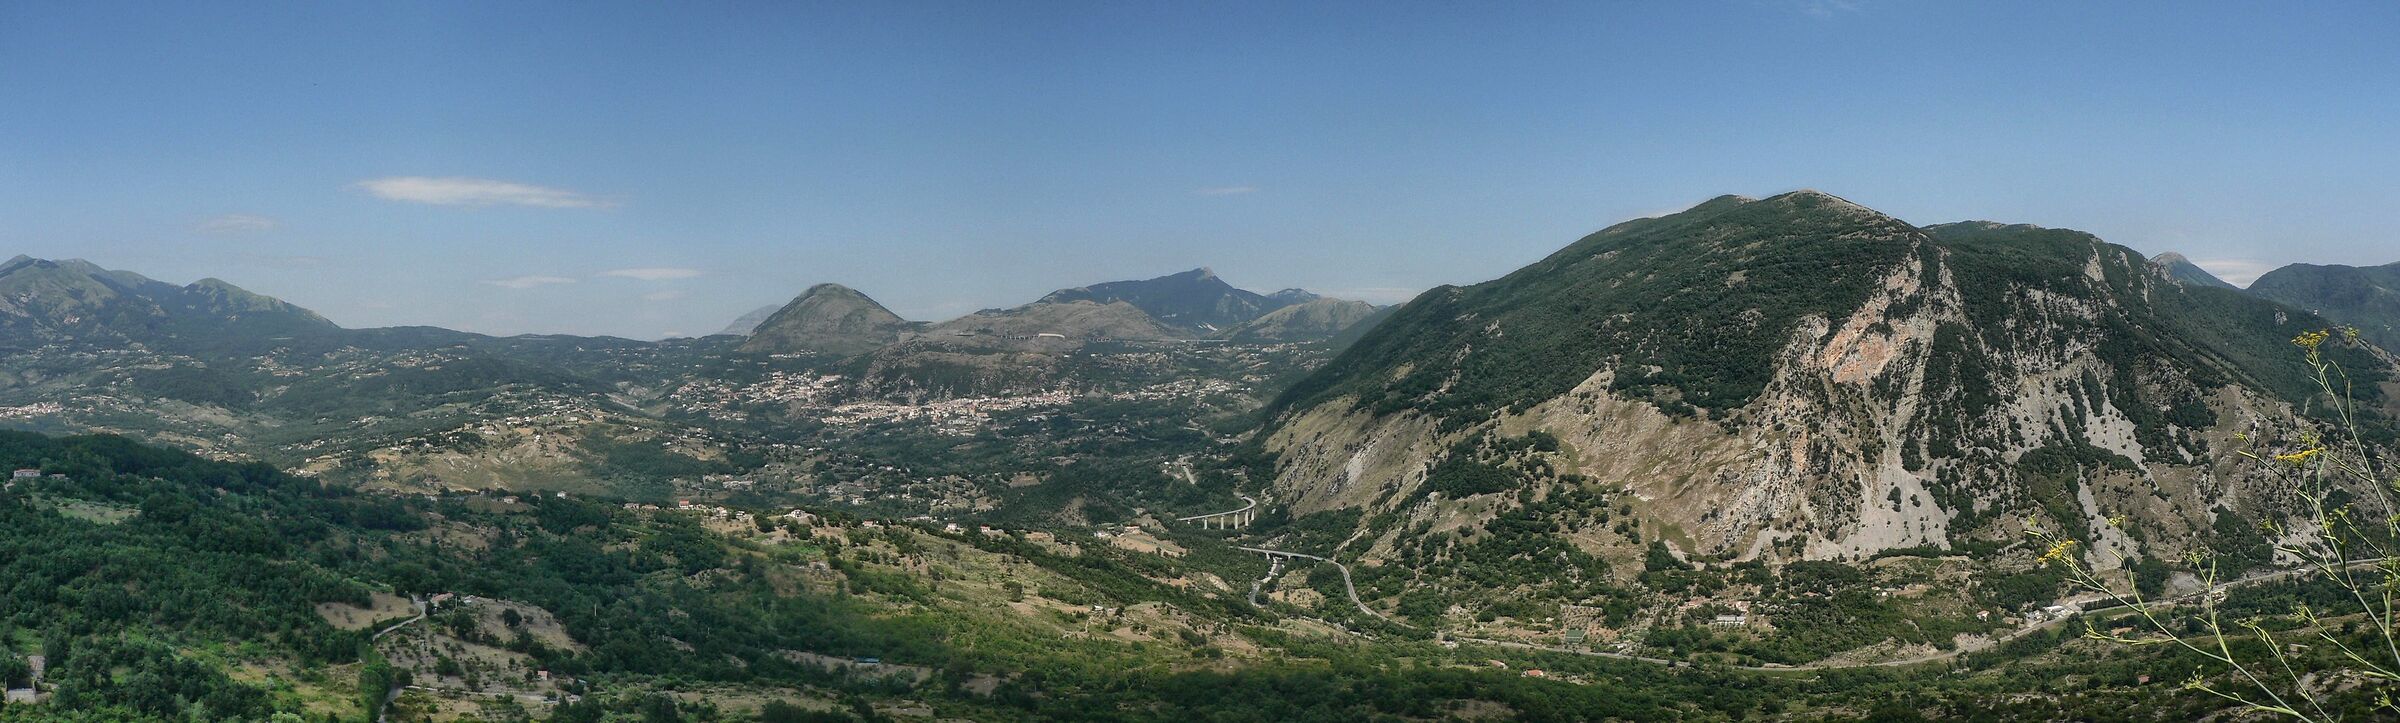 La Valle del Noce vista da Trecchina (pz)...